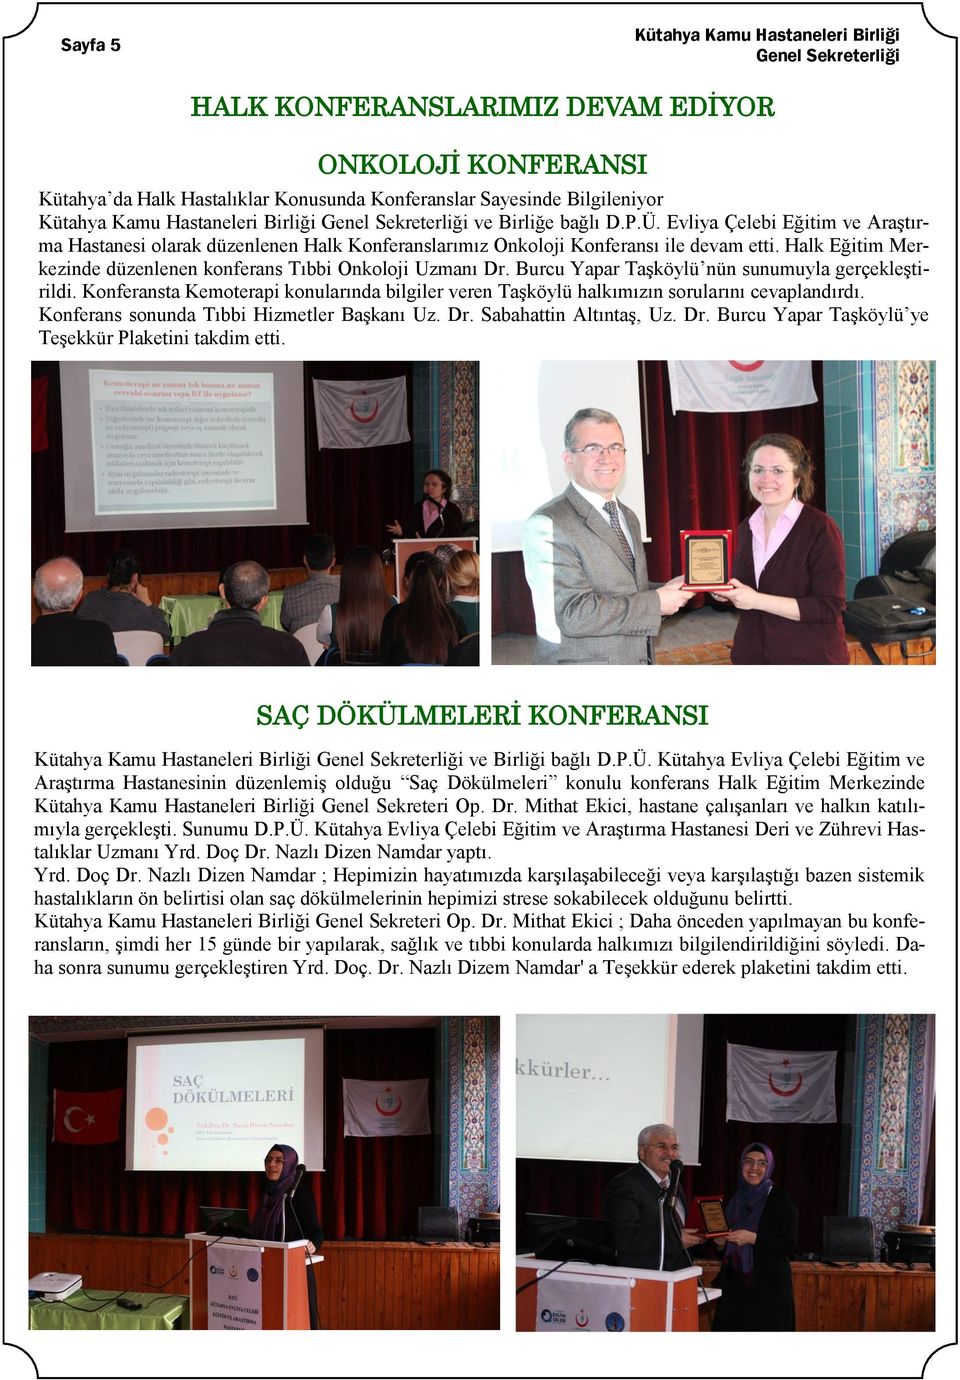 Halk Eğitim Merkezinde düzenlenen konferans Tıbbi Onkoloji Uzmanı Dr. Burcu Yapar TaĢköylü nün sunumuyla gerçekleģtirildi.